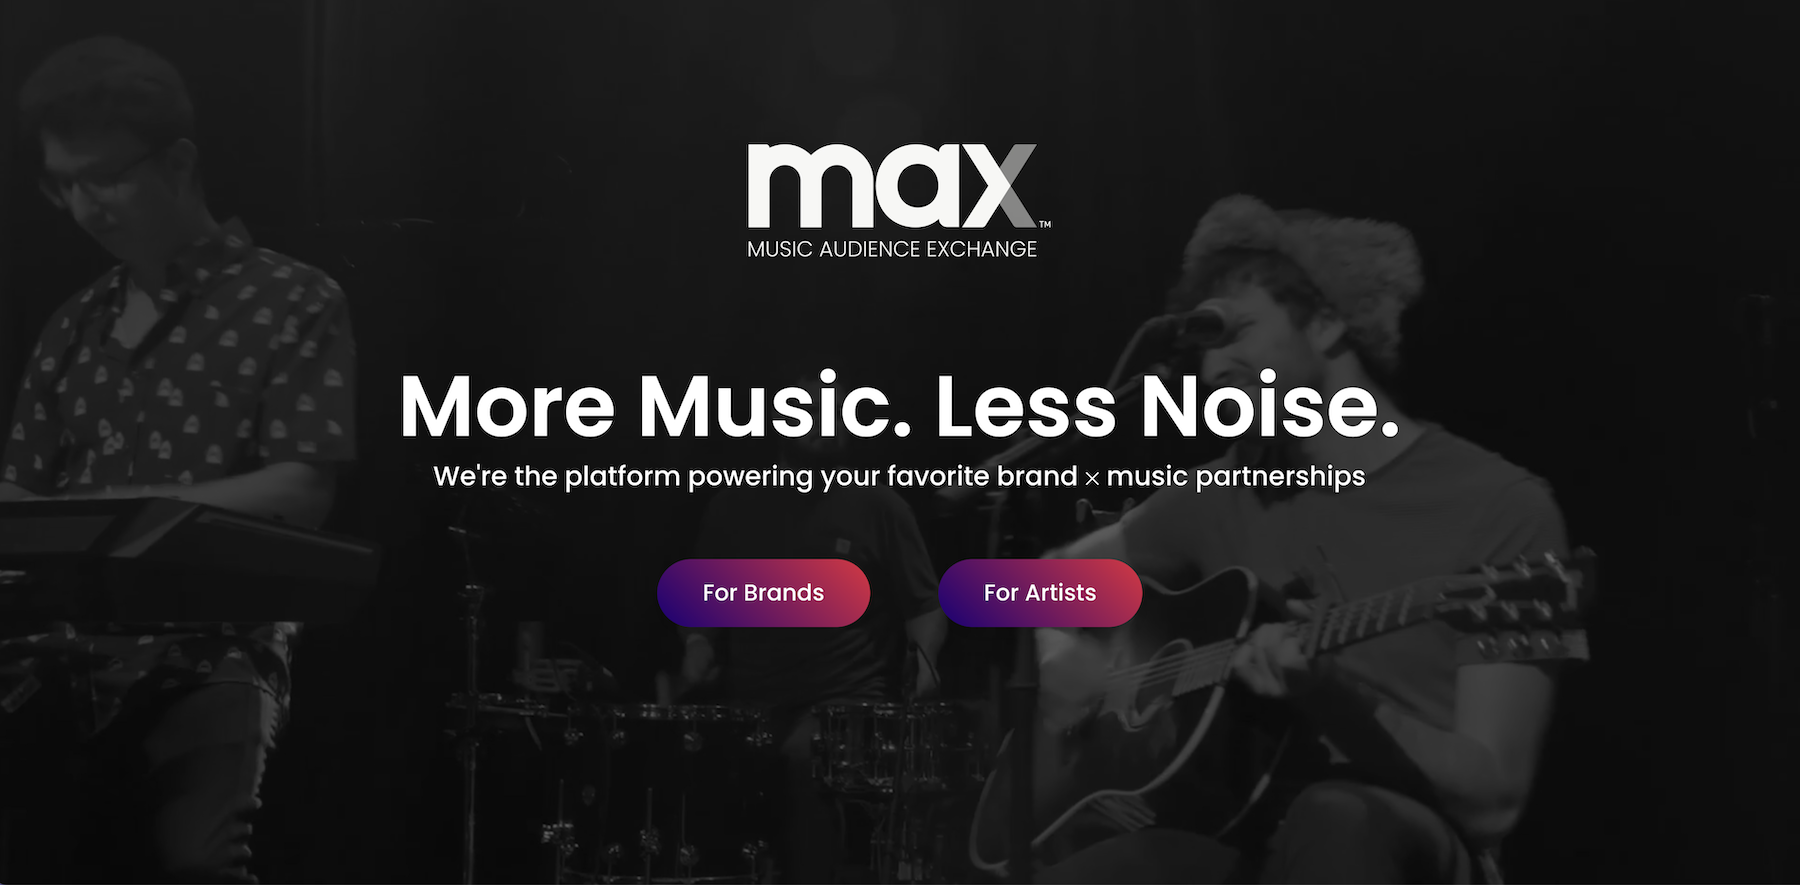 Firmowa strona internetowa agencji muzycznej Max to wizytówka online ciekawie prezentująca ofertę. 